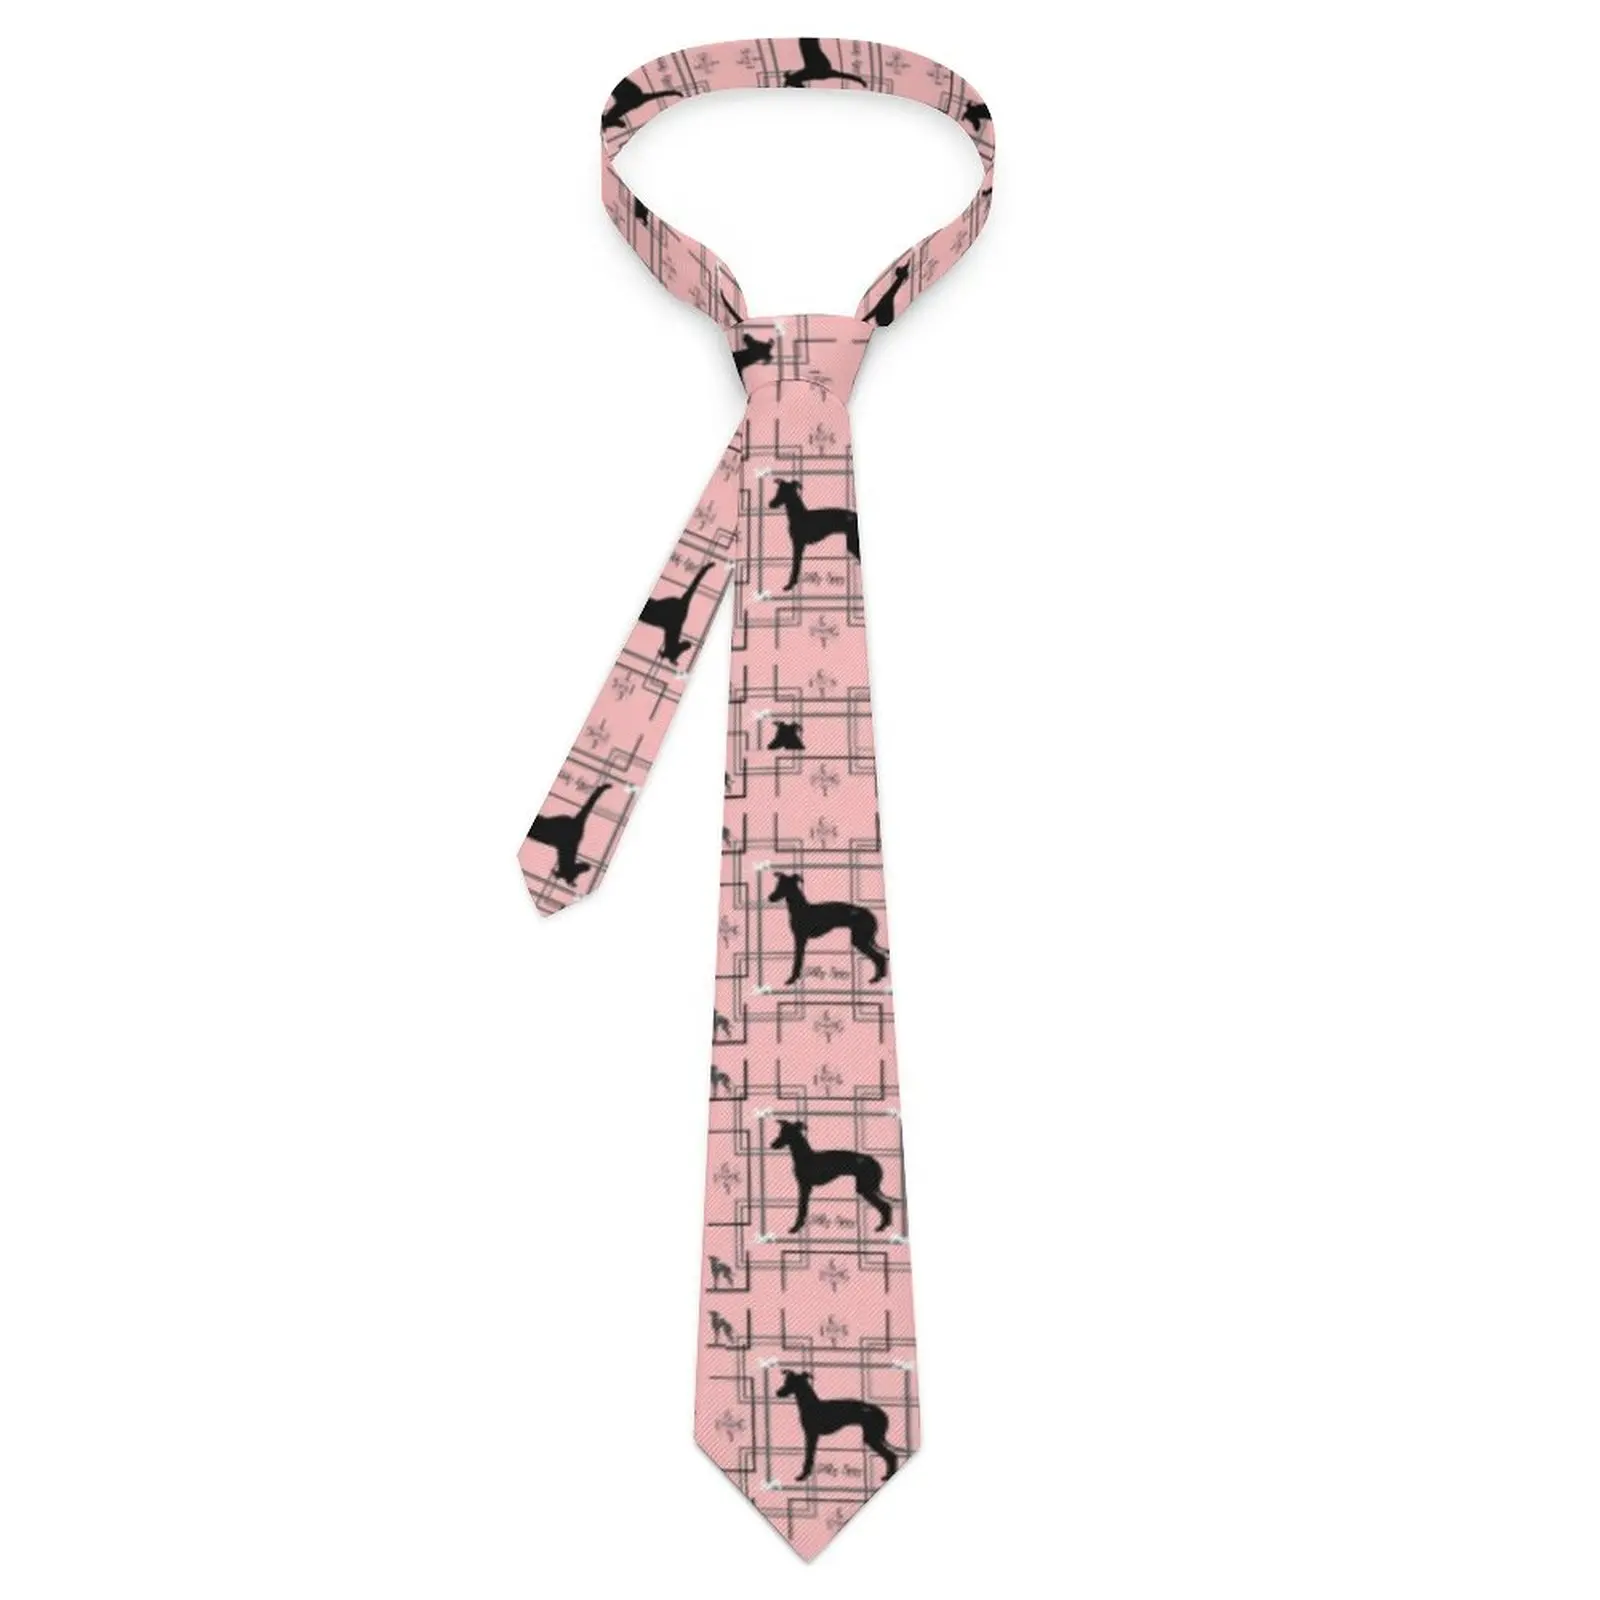 

Черный галстук с принтом собаки, милые забавные галстуки для мужчин, качественный галстук для ошейника, графический галстук